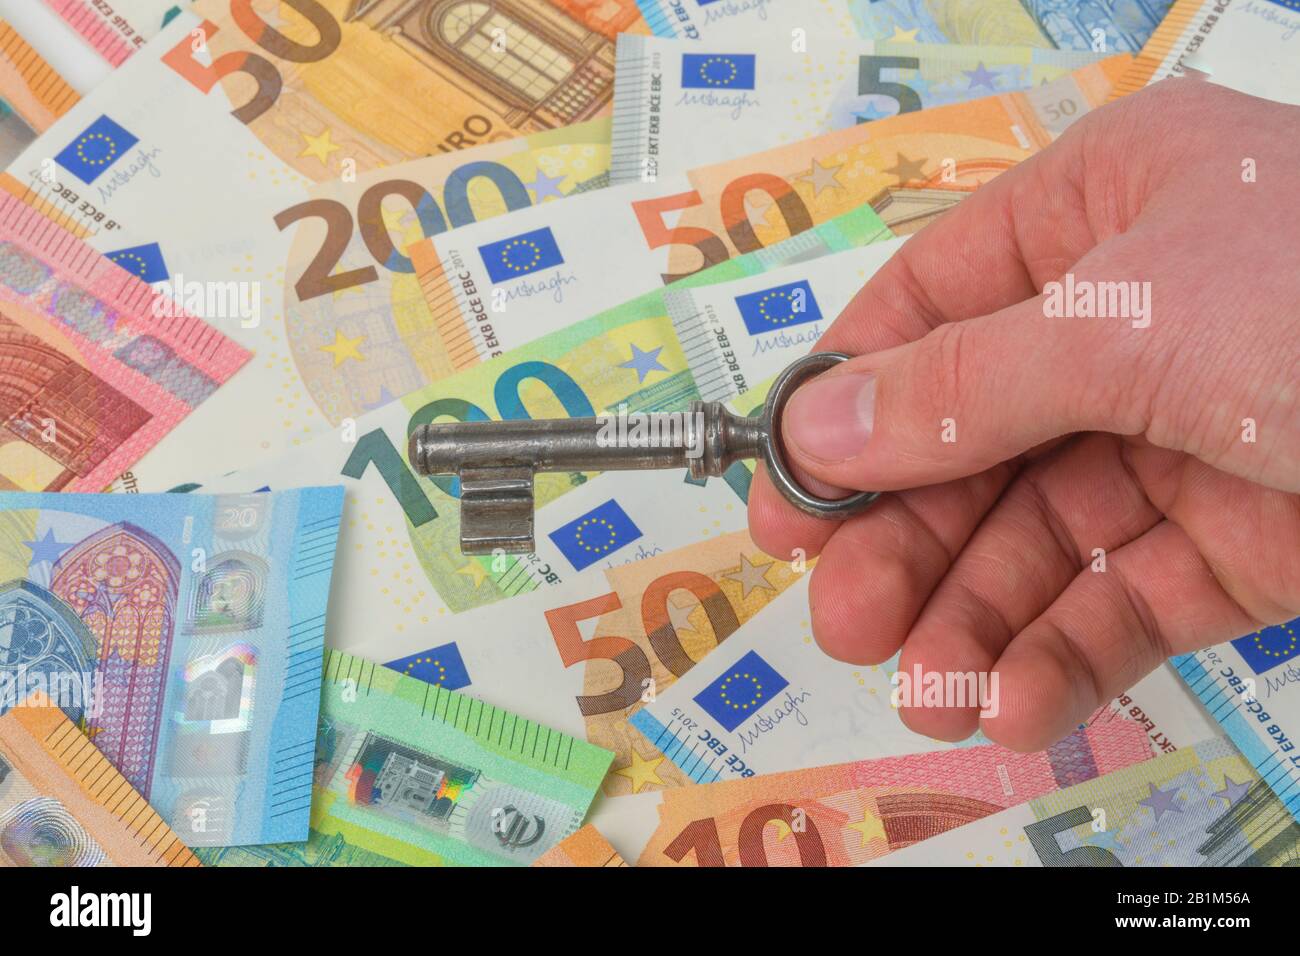 Geld, Euros, Banknoten, Scheine, Schlüssel, Symbolfoto Immobilienkauf, Studioaufnahme Stock Photo